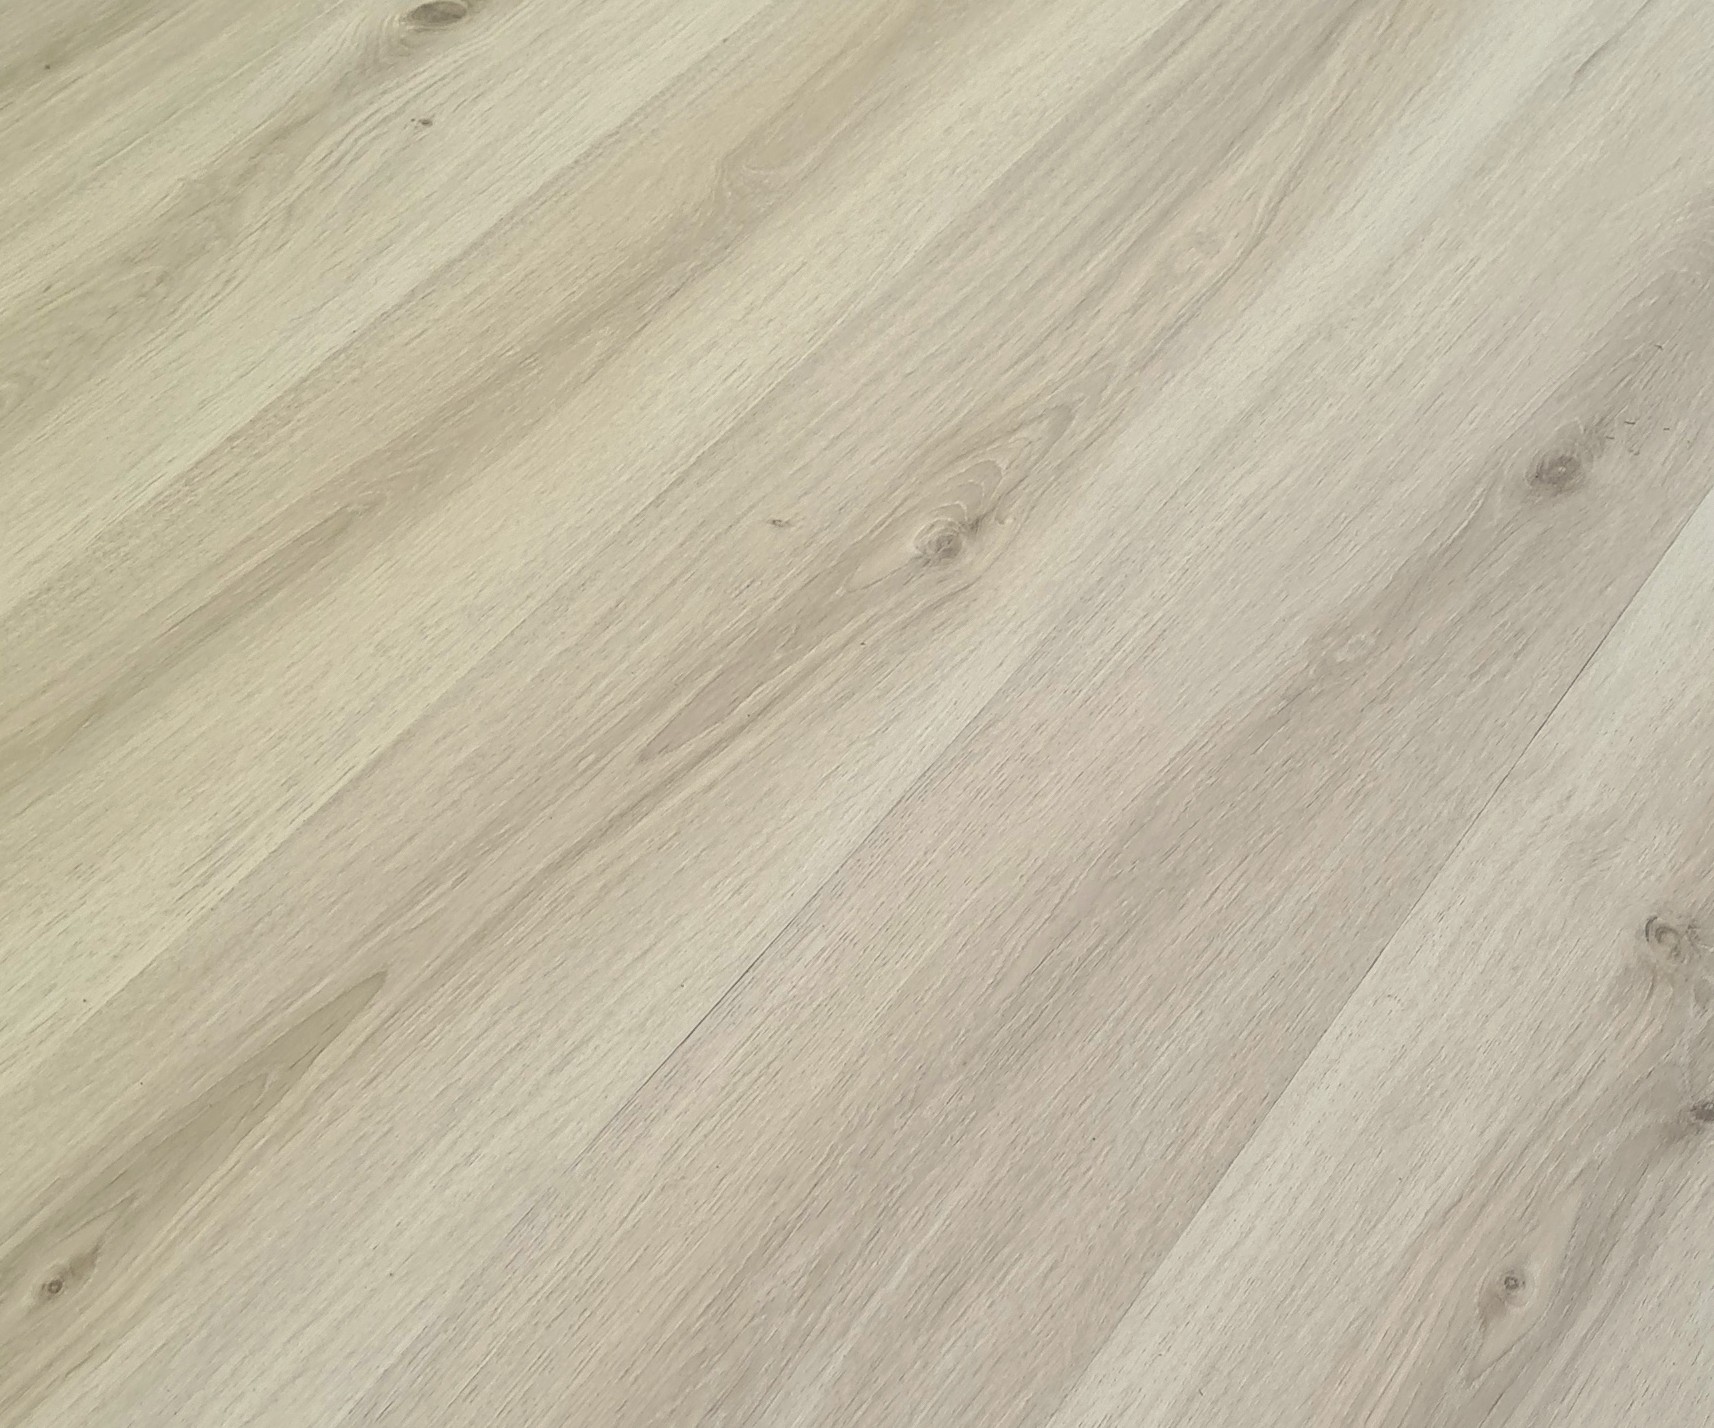 Podlaha vinylová zámková SPC Home kalahari oak beige KPP